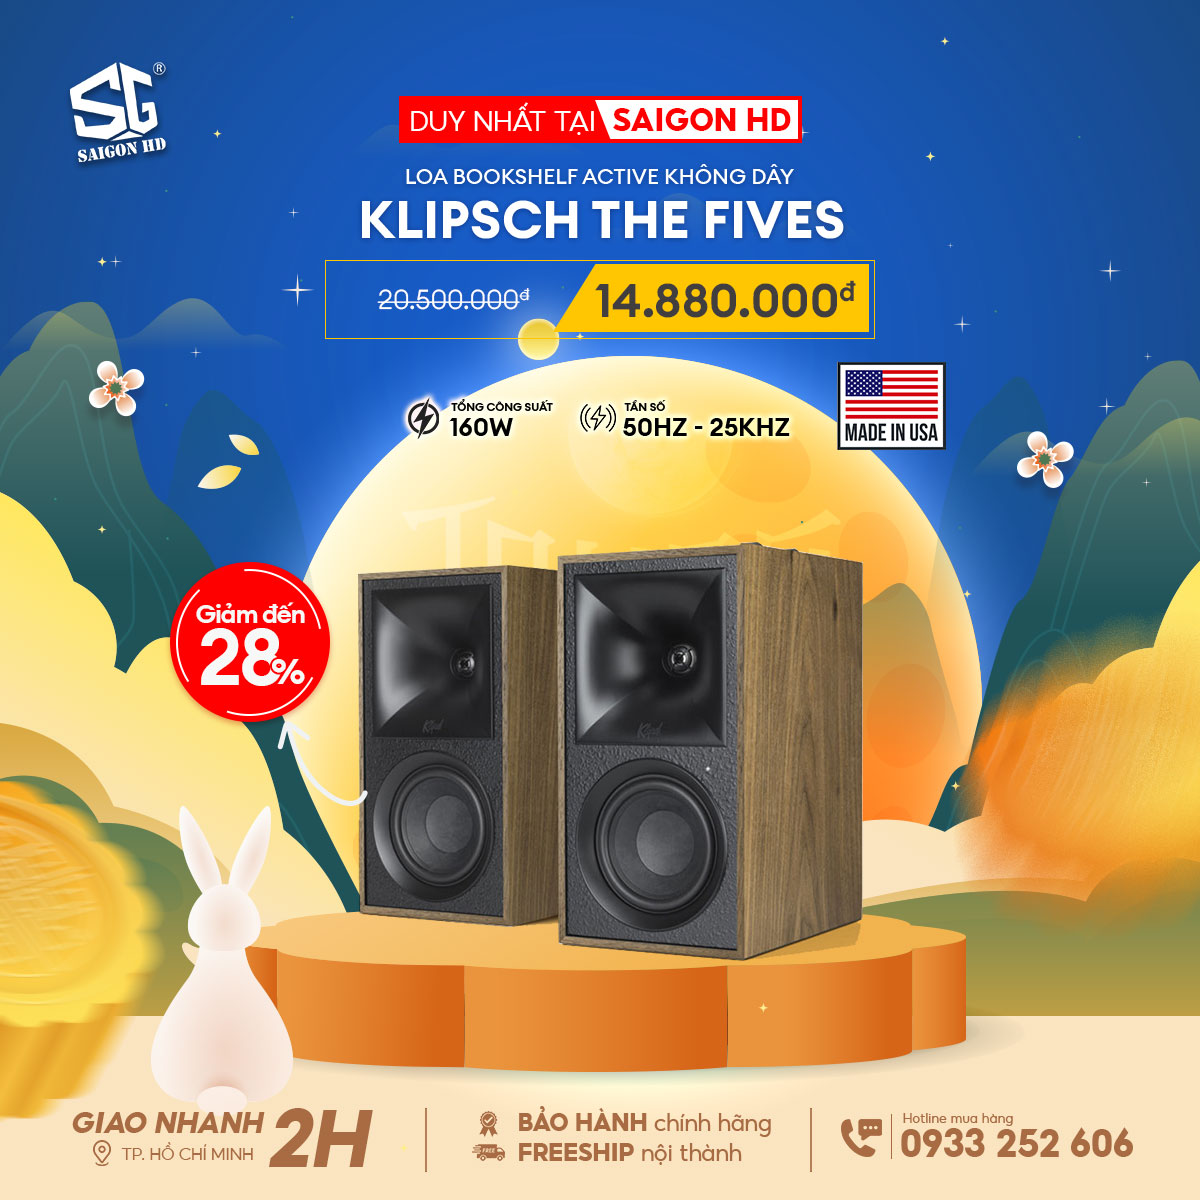 KLIPSCH THE FIVES